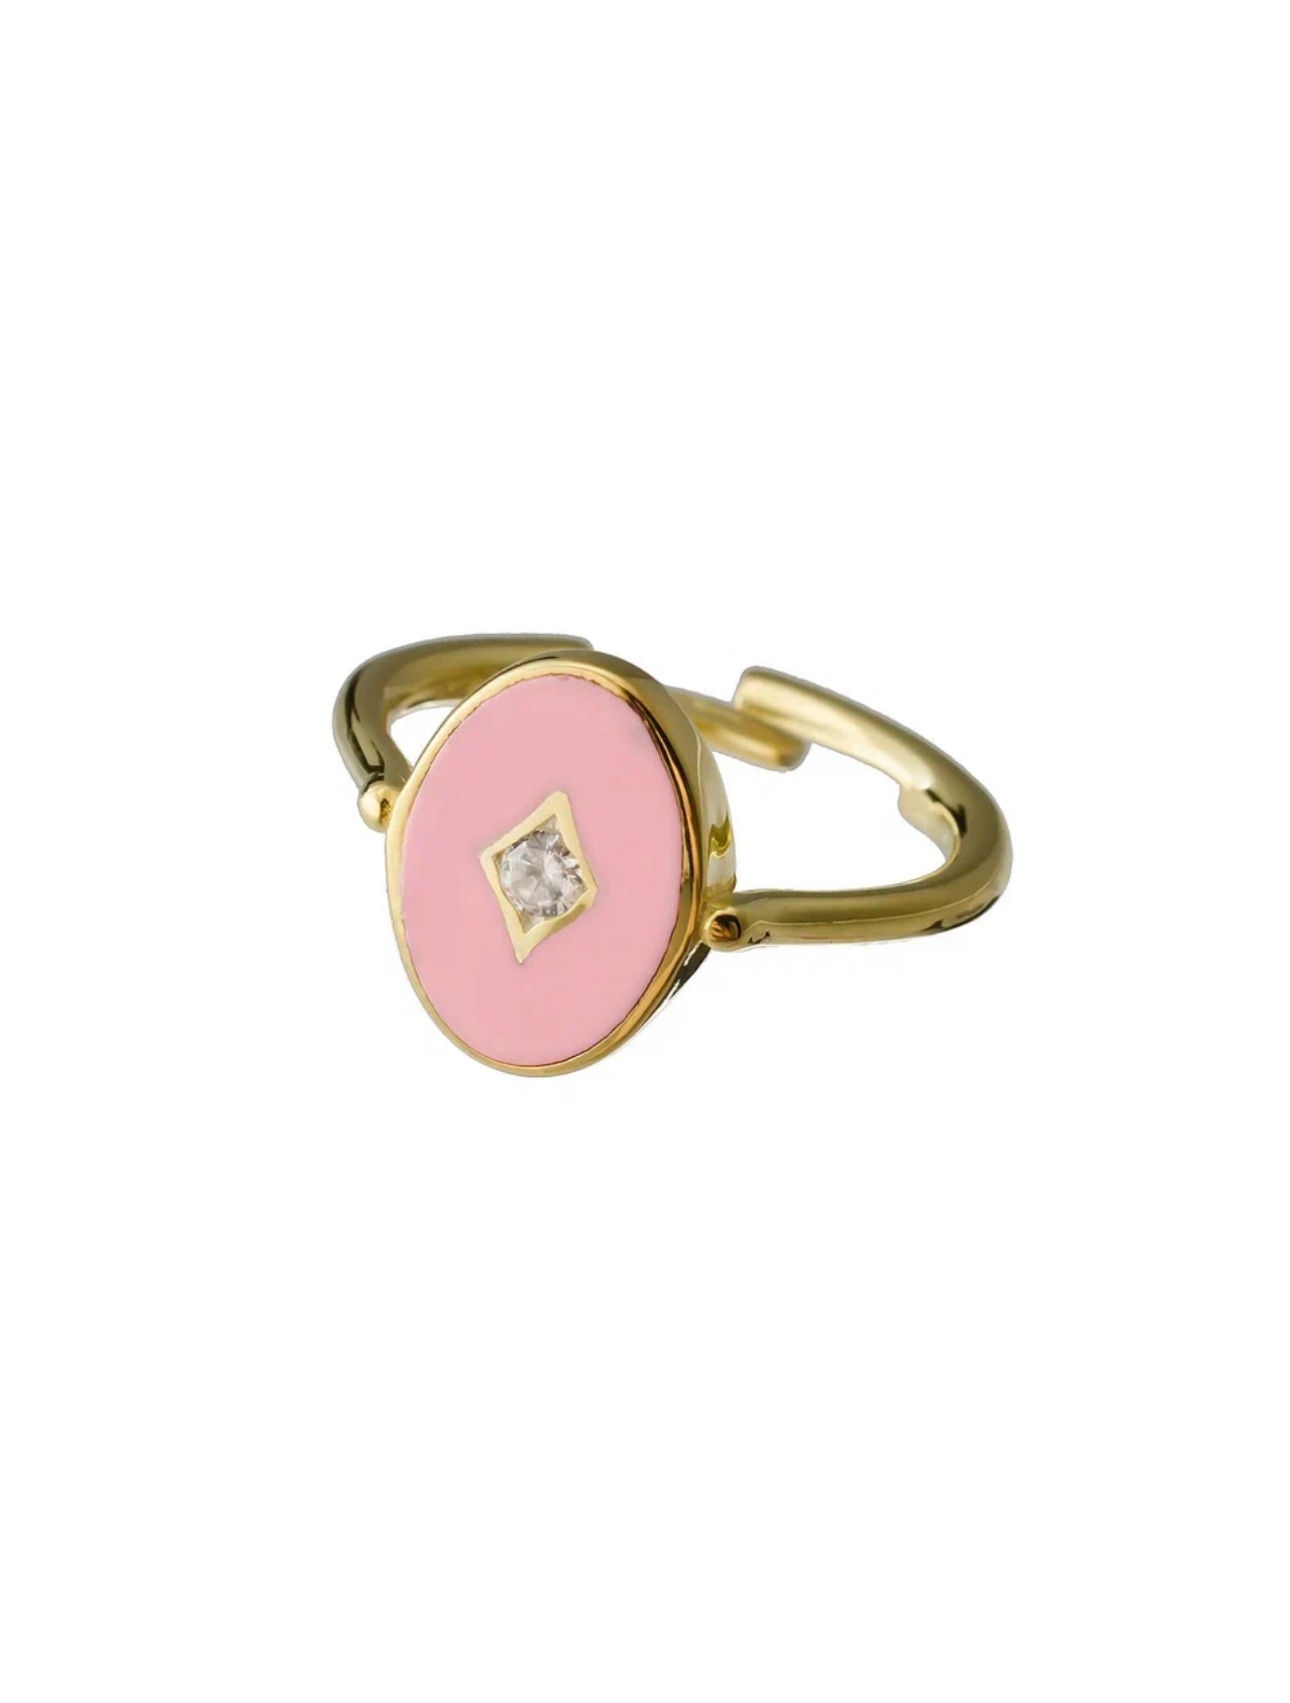 Кольцо Аврора, серебро 925, позолота 18К, розовая эмаль